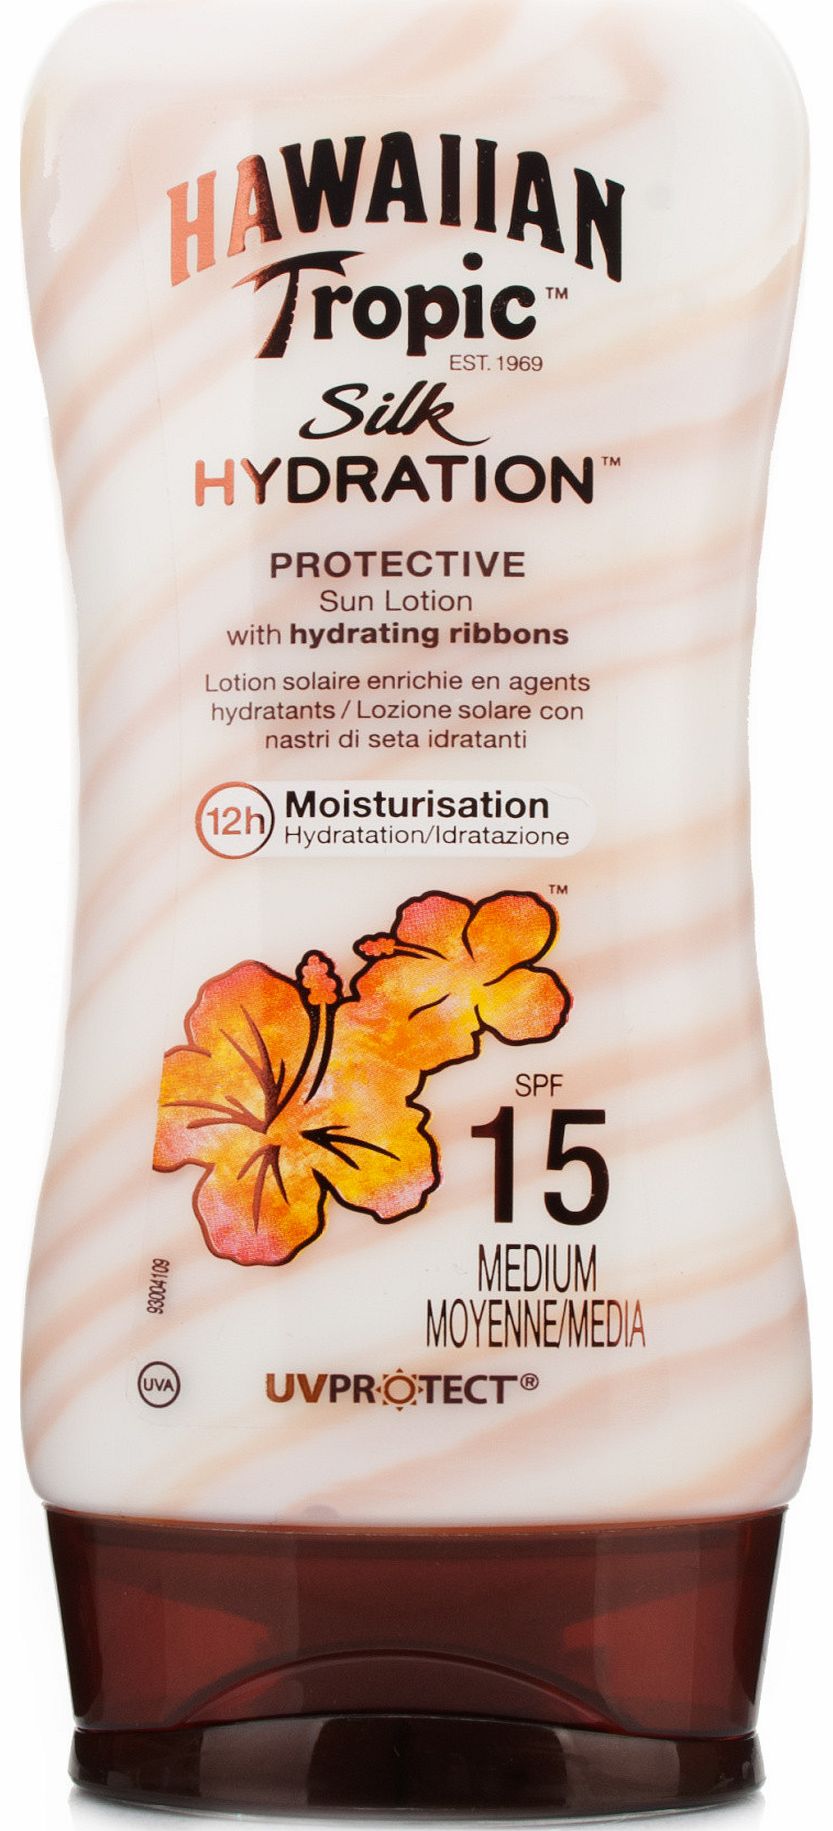 Hawaiian Tropic Silk Hydration Protective Sun